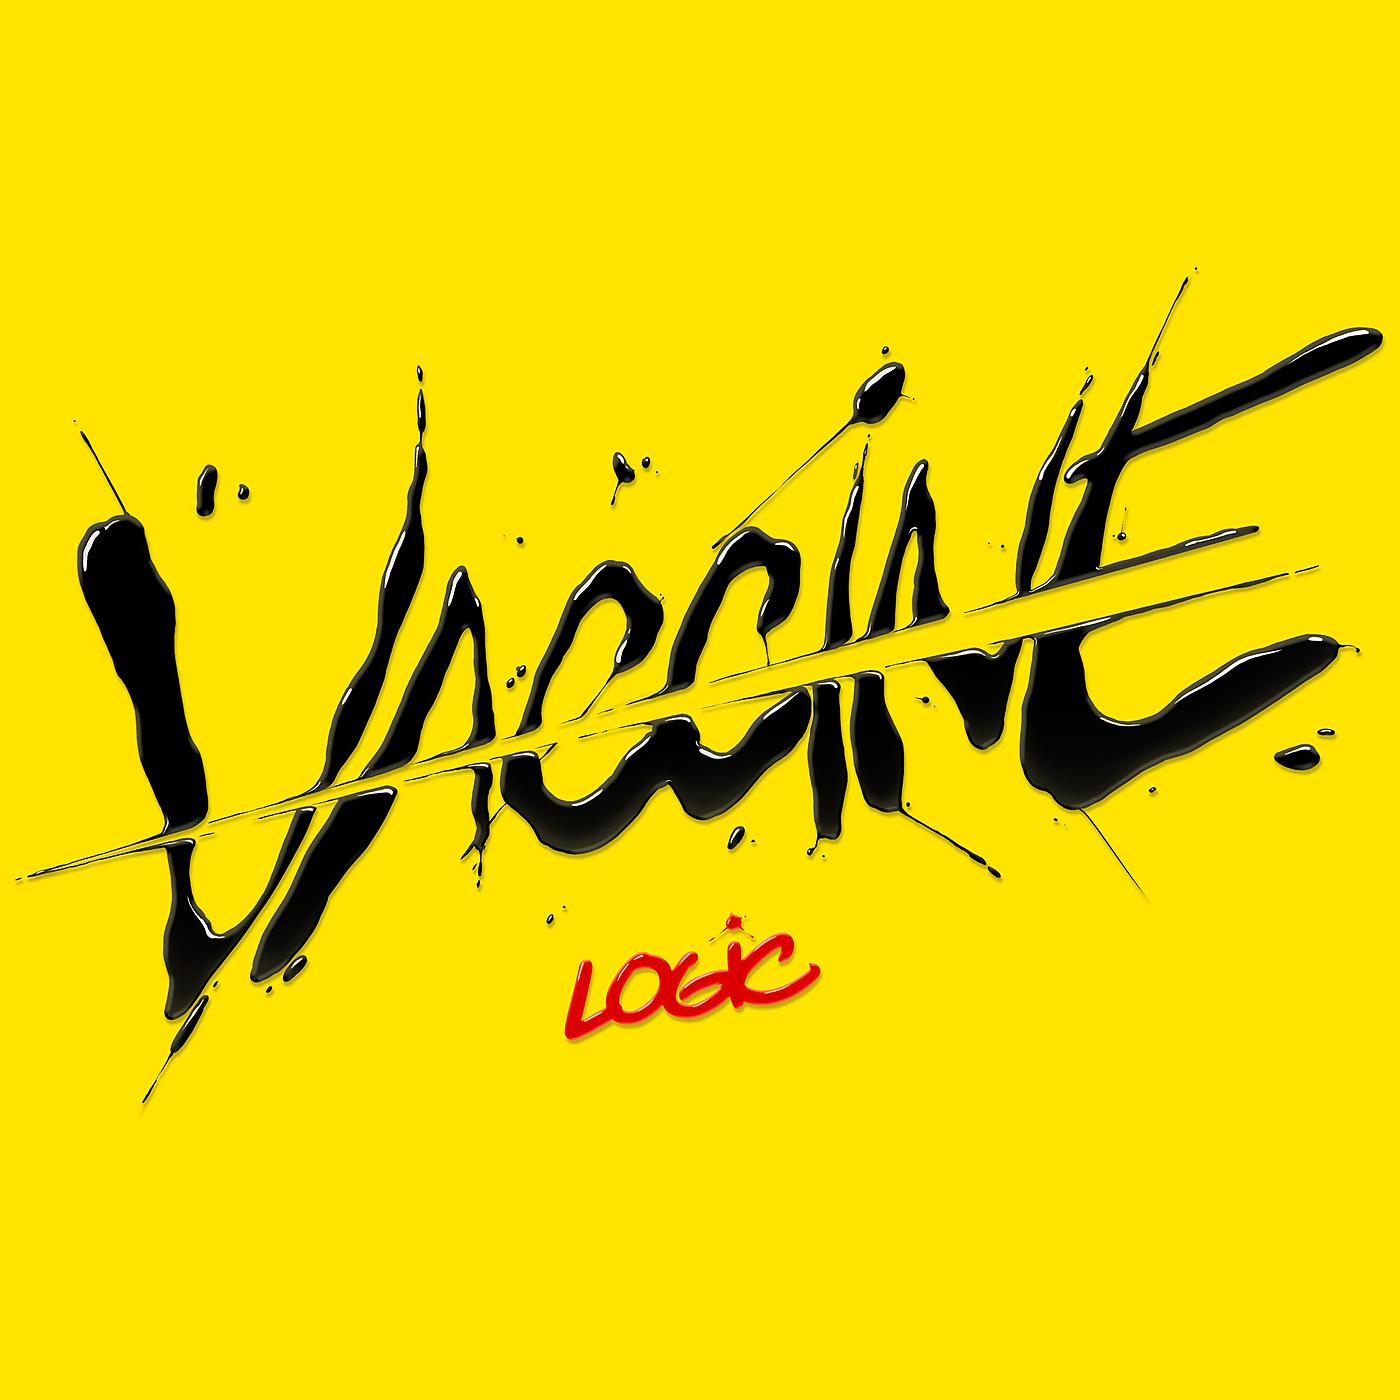 Постер альбома Vaccine